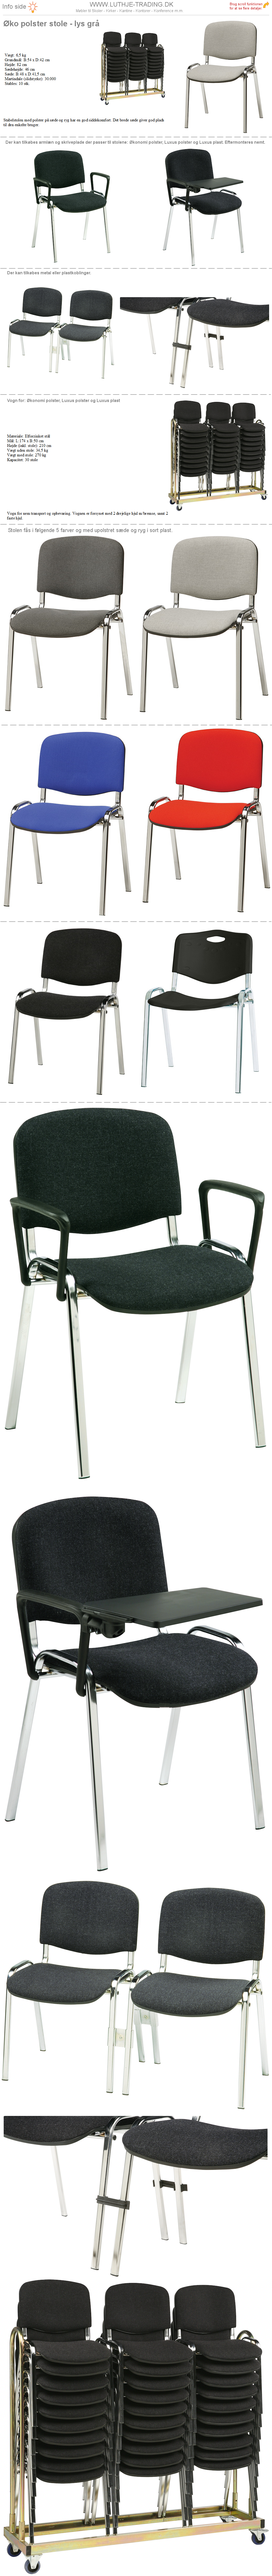 Stabelstole Øko polster lys grå